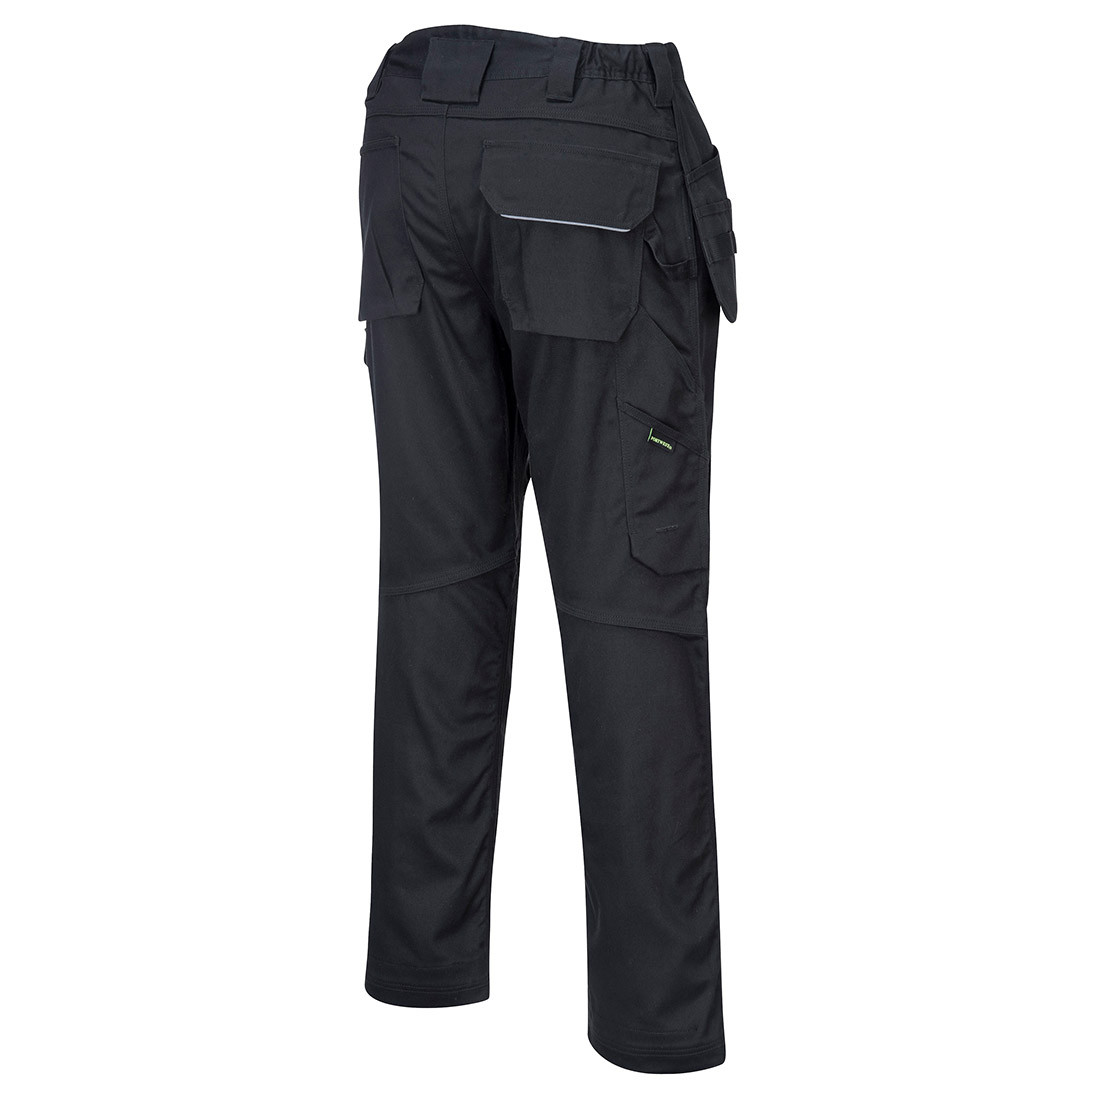 Pantaloni tamplar din bumbac PW3 - Imbracaminte de protectie